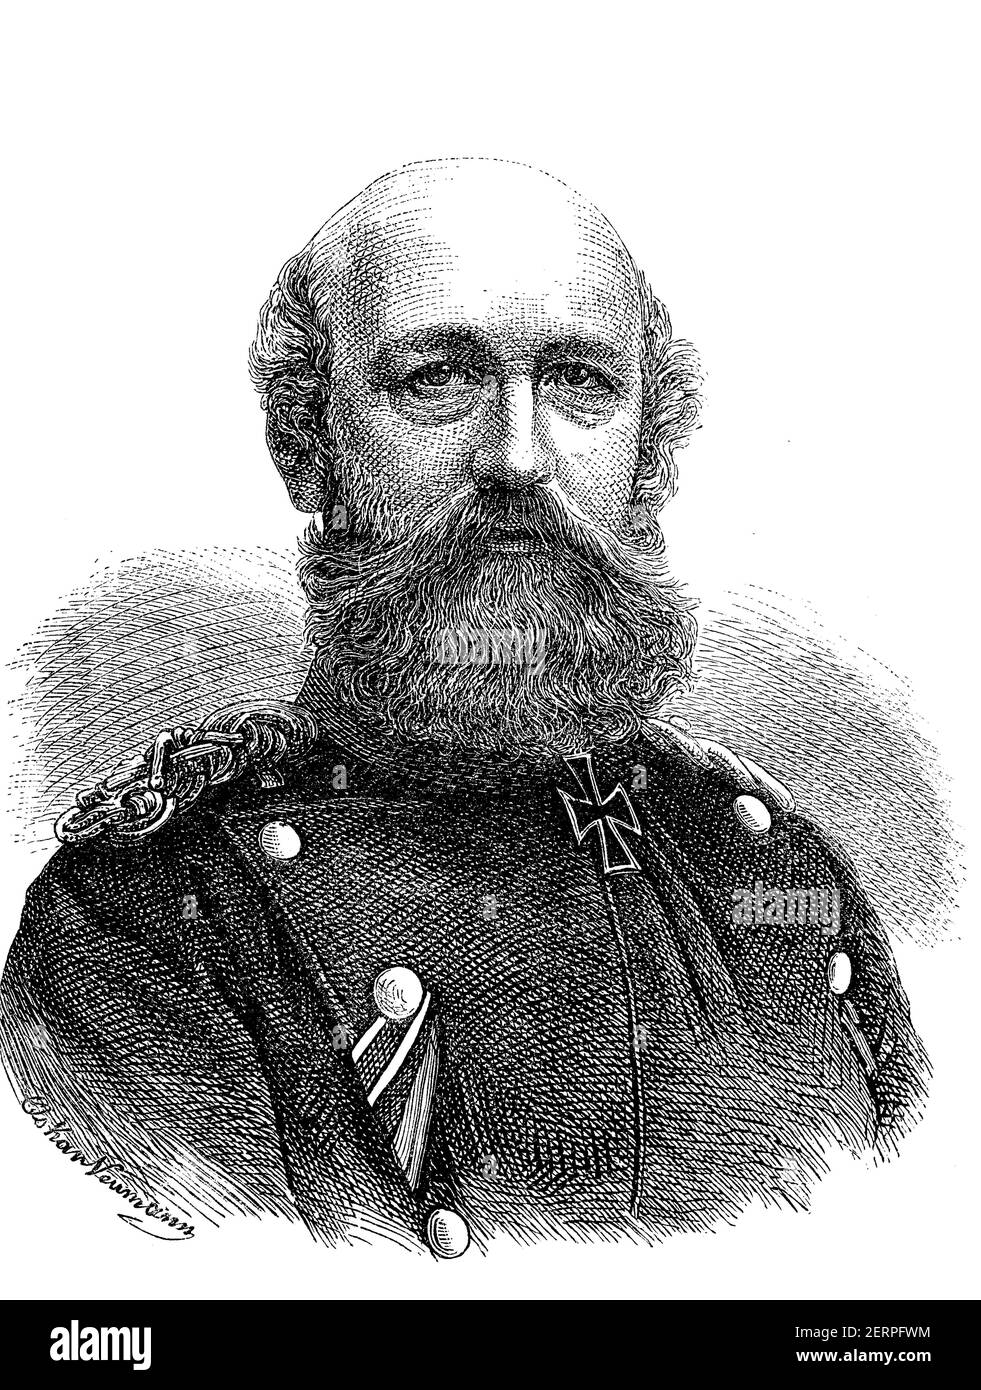 Frederick Francis II, Gran Duque de Mecklemburgo, 28 de febrero de 1823 - 15 de abril de 1883, fue Gran Duque de Mecklemburgo en el distrito de Mecklemburgo-Schwerin Foto de stock